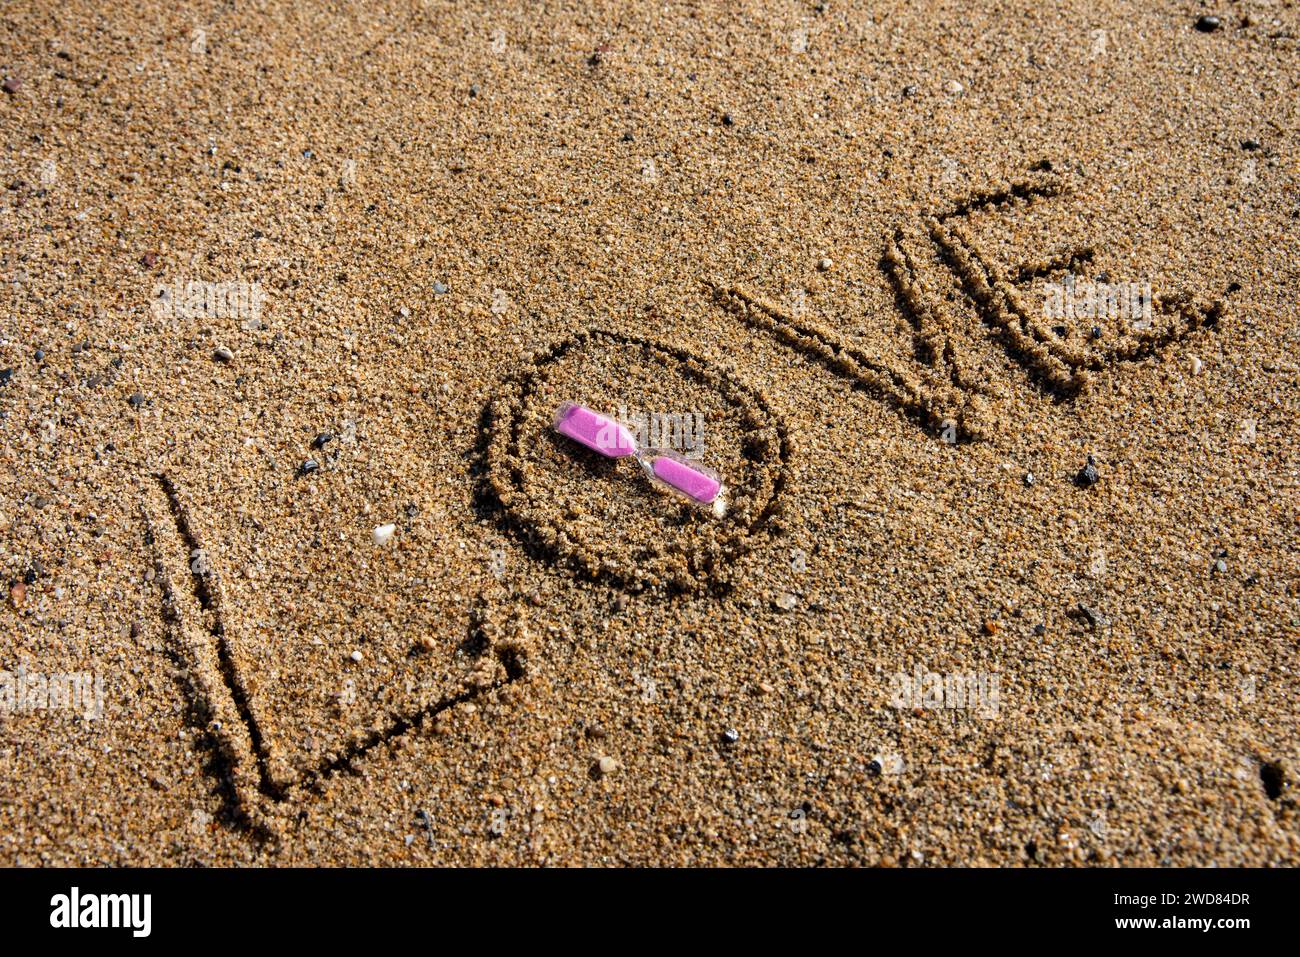 Zeitlose Liebe: „Liebe“ am Strand in einer rosafarbenen Sanduhr, wo Romantik auf den Sand ewiger Momente trifft. Stockfoto